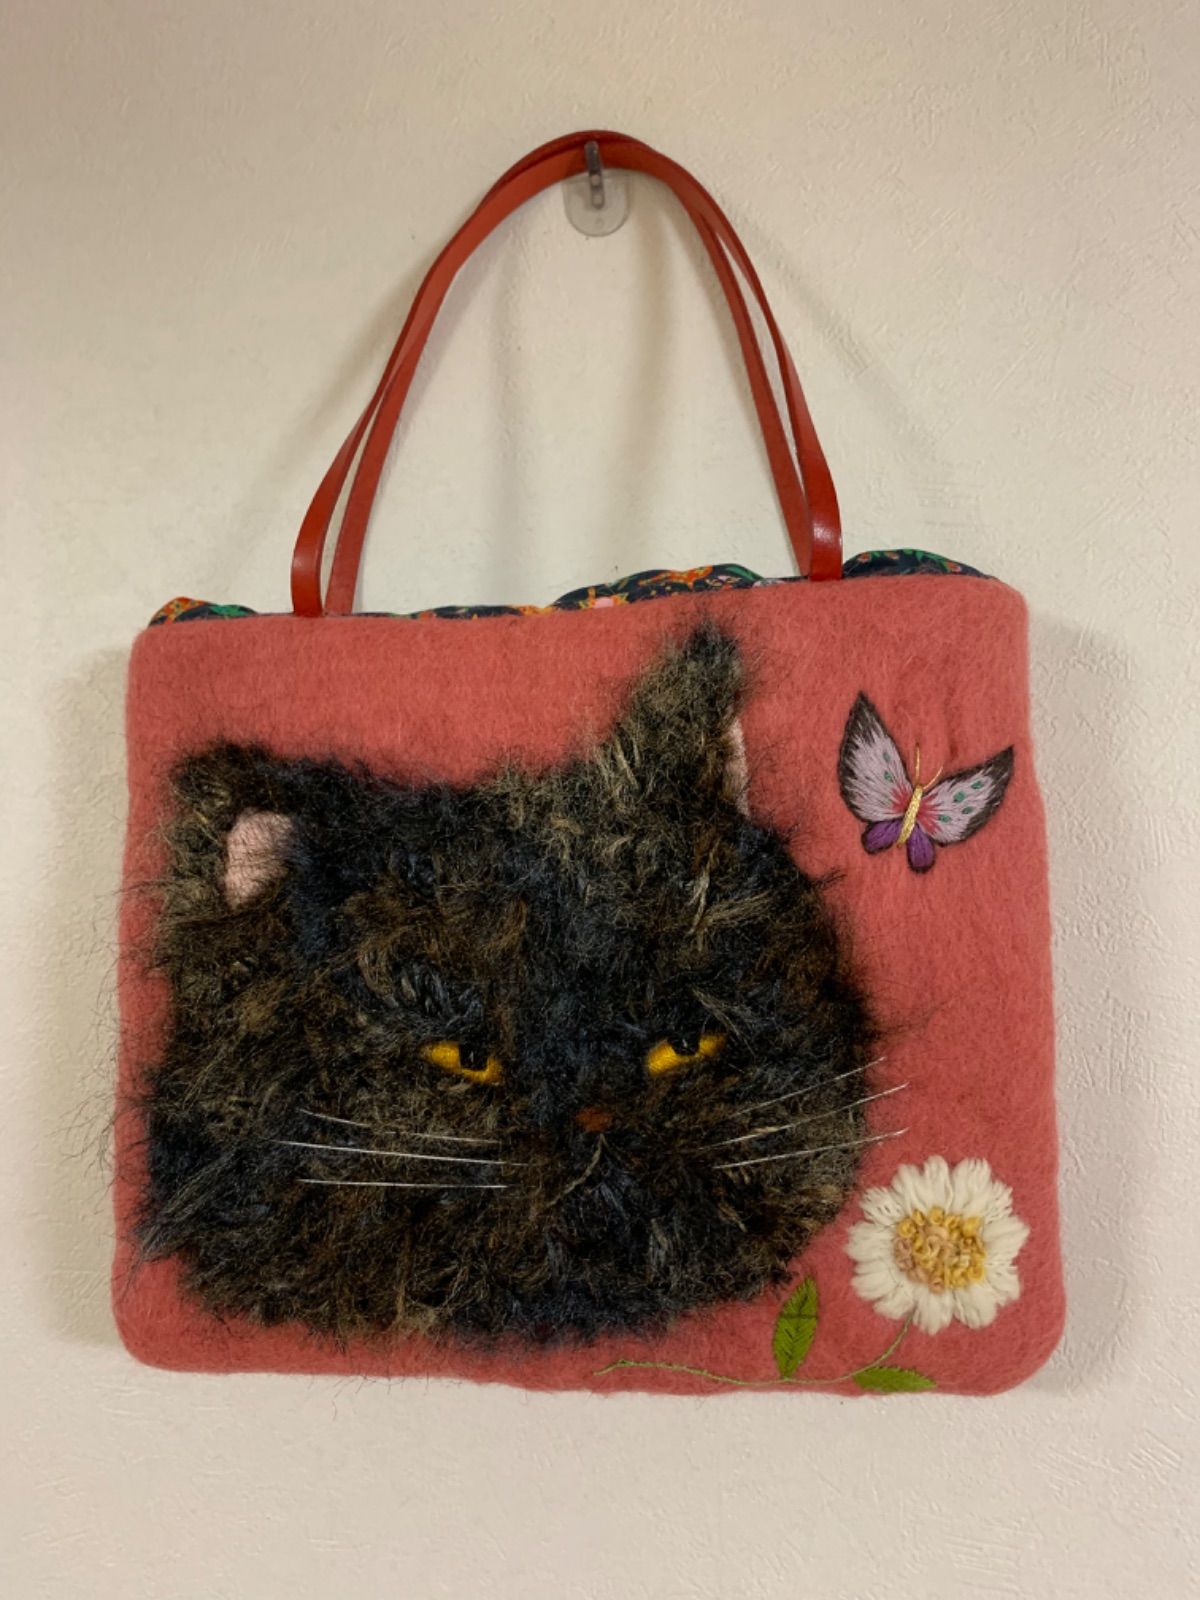 ペルシャ猫と蝶々とお花の刺繍 羊毛フェルト生地のバッグ - 世界に一つ